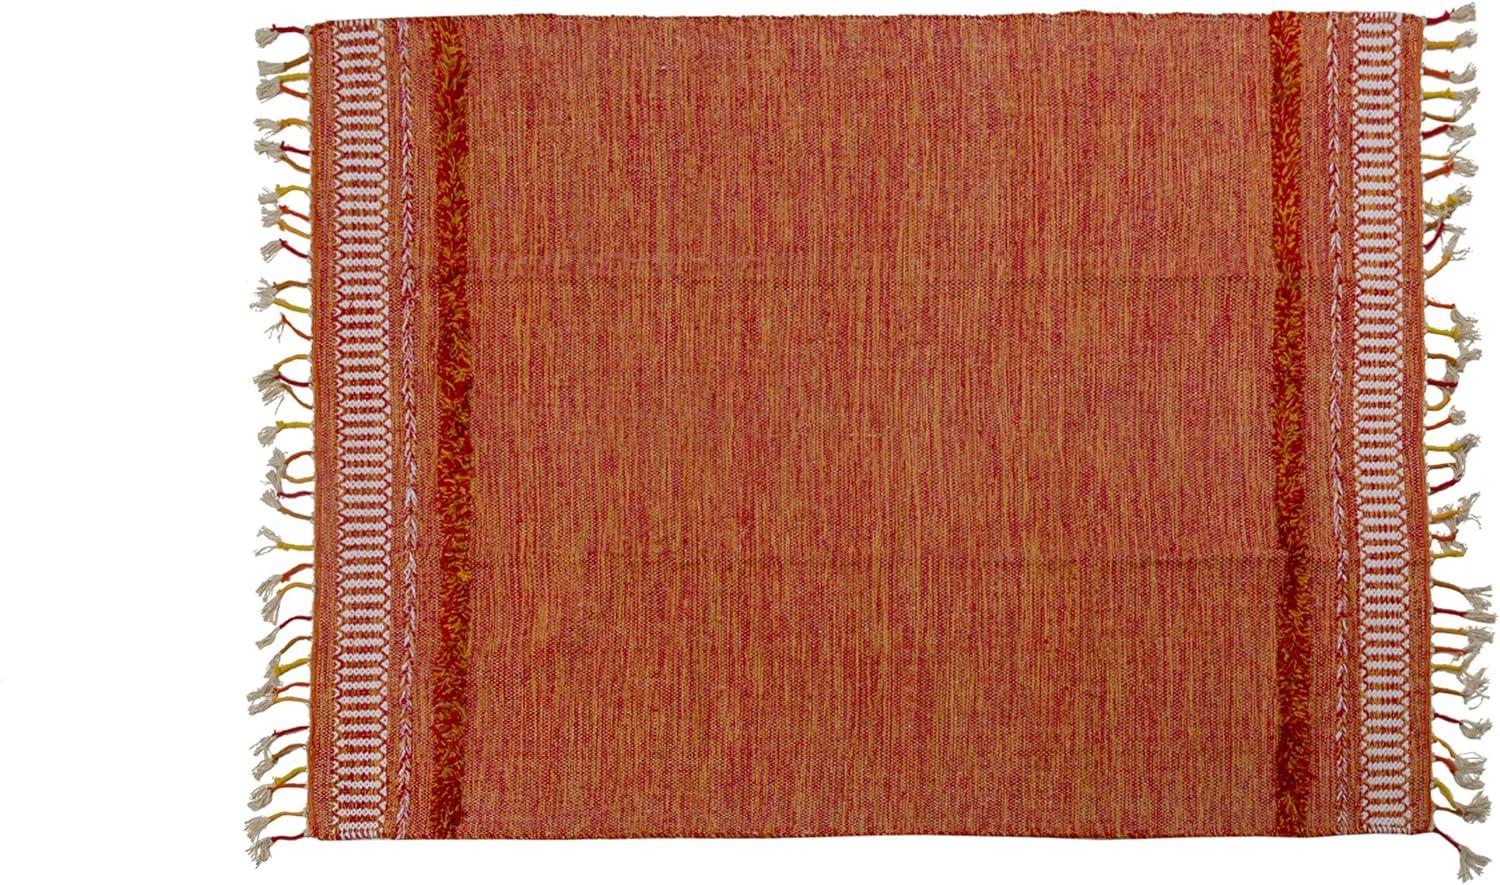 Dmora Moderner Boston-Teppich, Kelim-Stil, 100% Baumwolle, orange, 230x160cm Bild 1